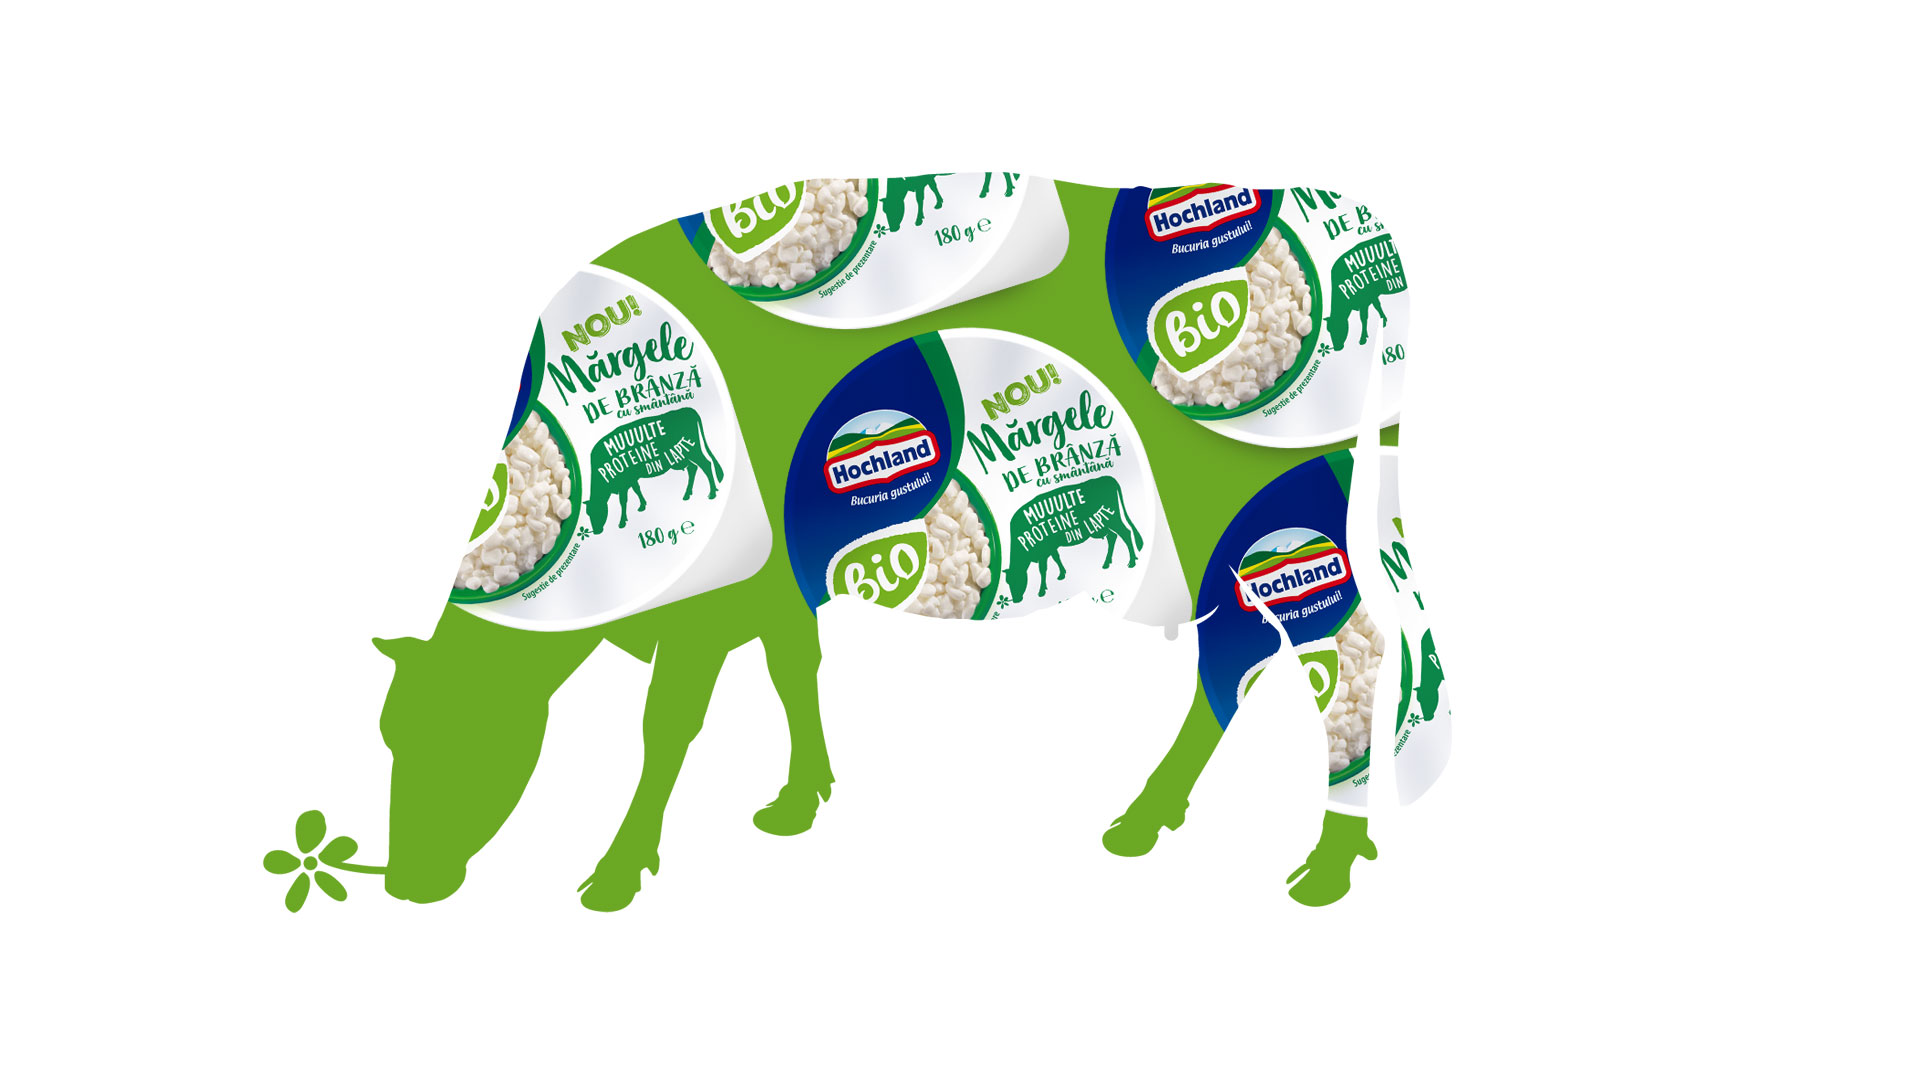 Świat marki Hochland Mărgele de brânză - ilustracja krowy składająca się z fragmentów opakowań serów.